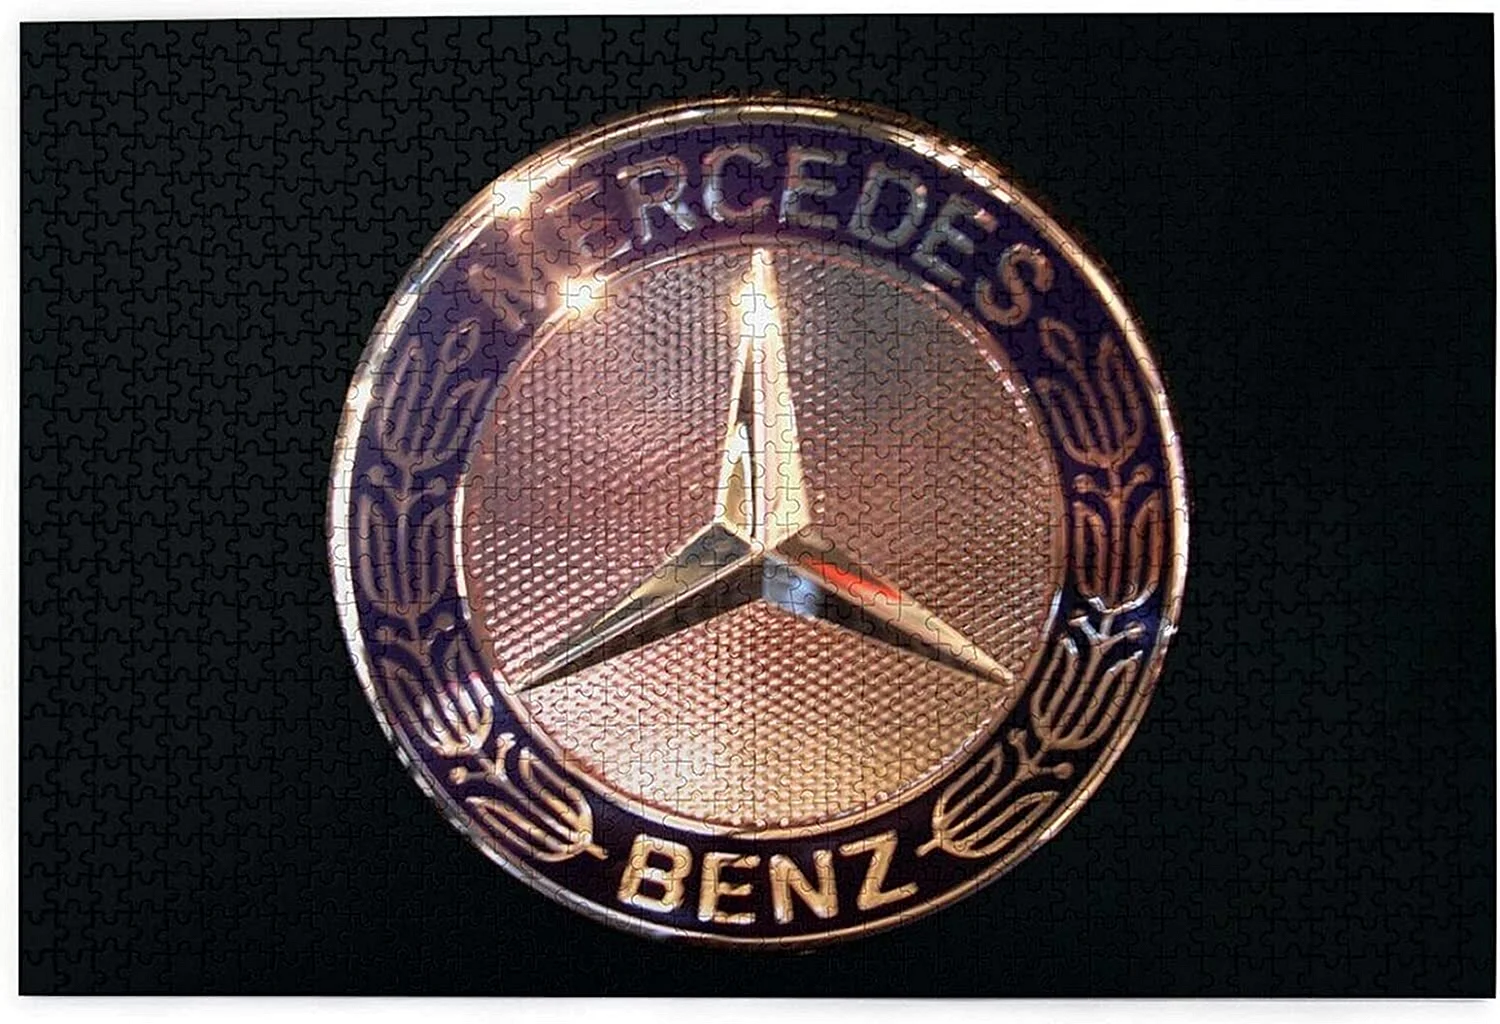 Daimler Benz logo